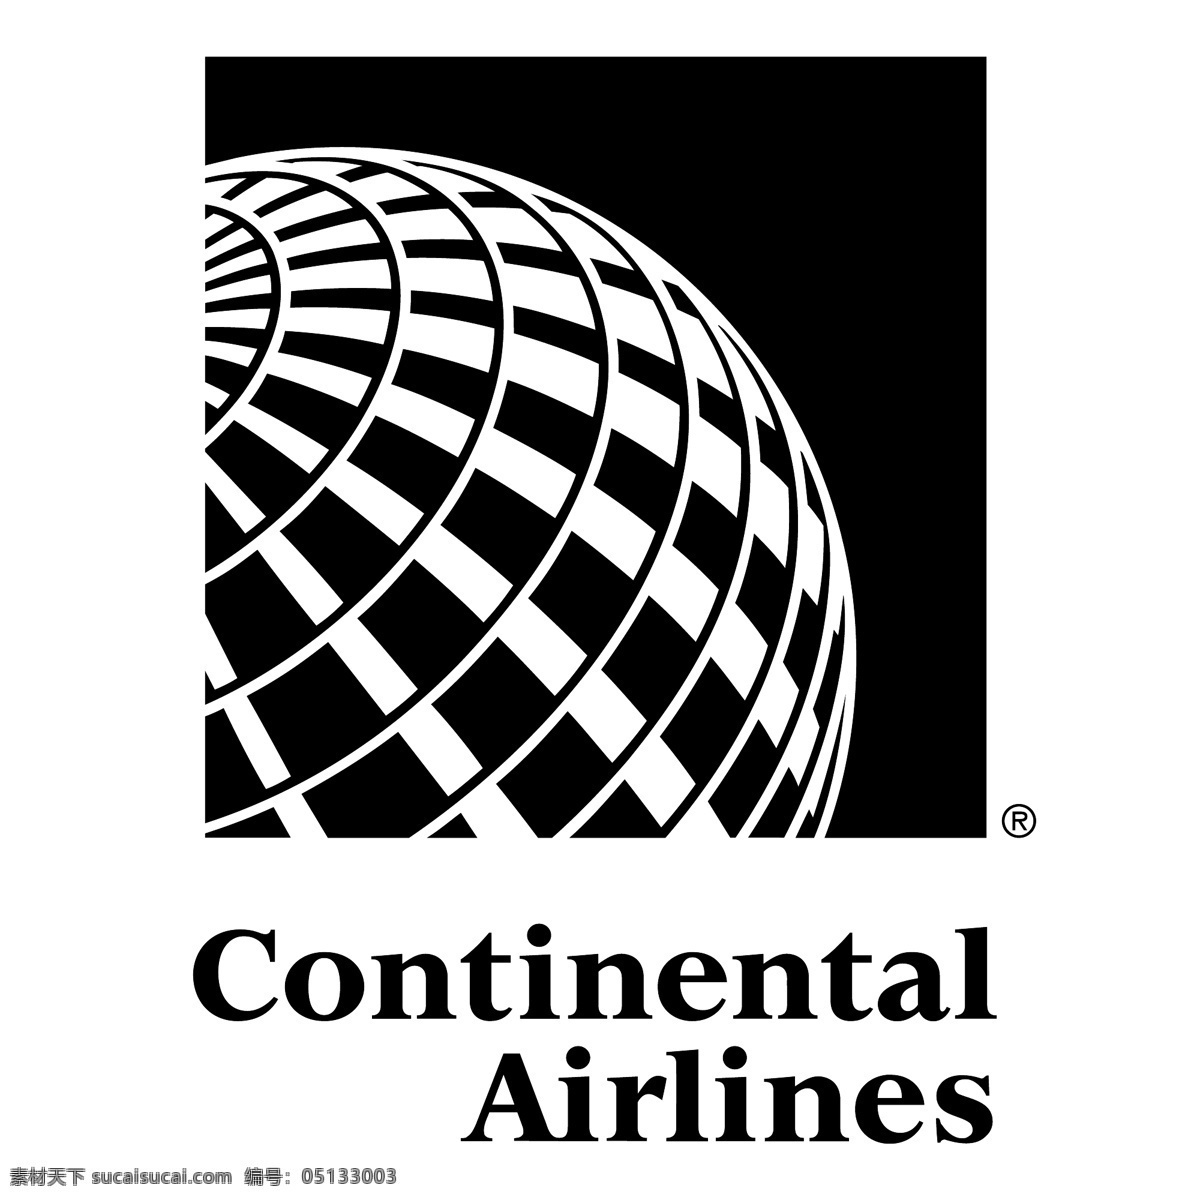 大陆航空公司 航空 欧式矢量 大陆 大陆航空 logo 矢量 矢量矢量标志 标志 大陆自由下载 大陆的设计 矢量图 建筑家居